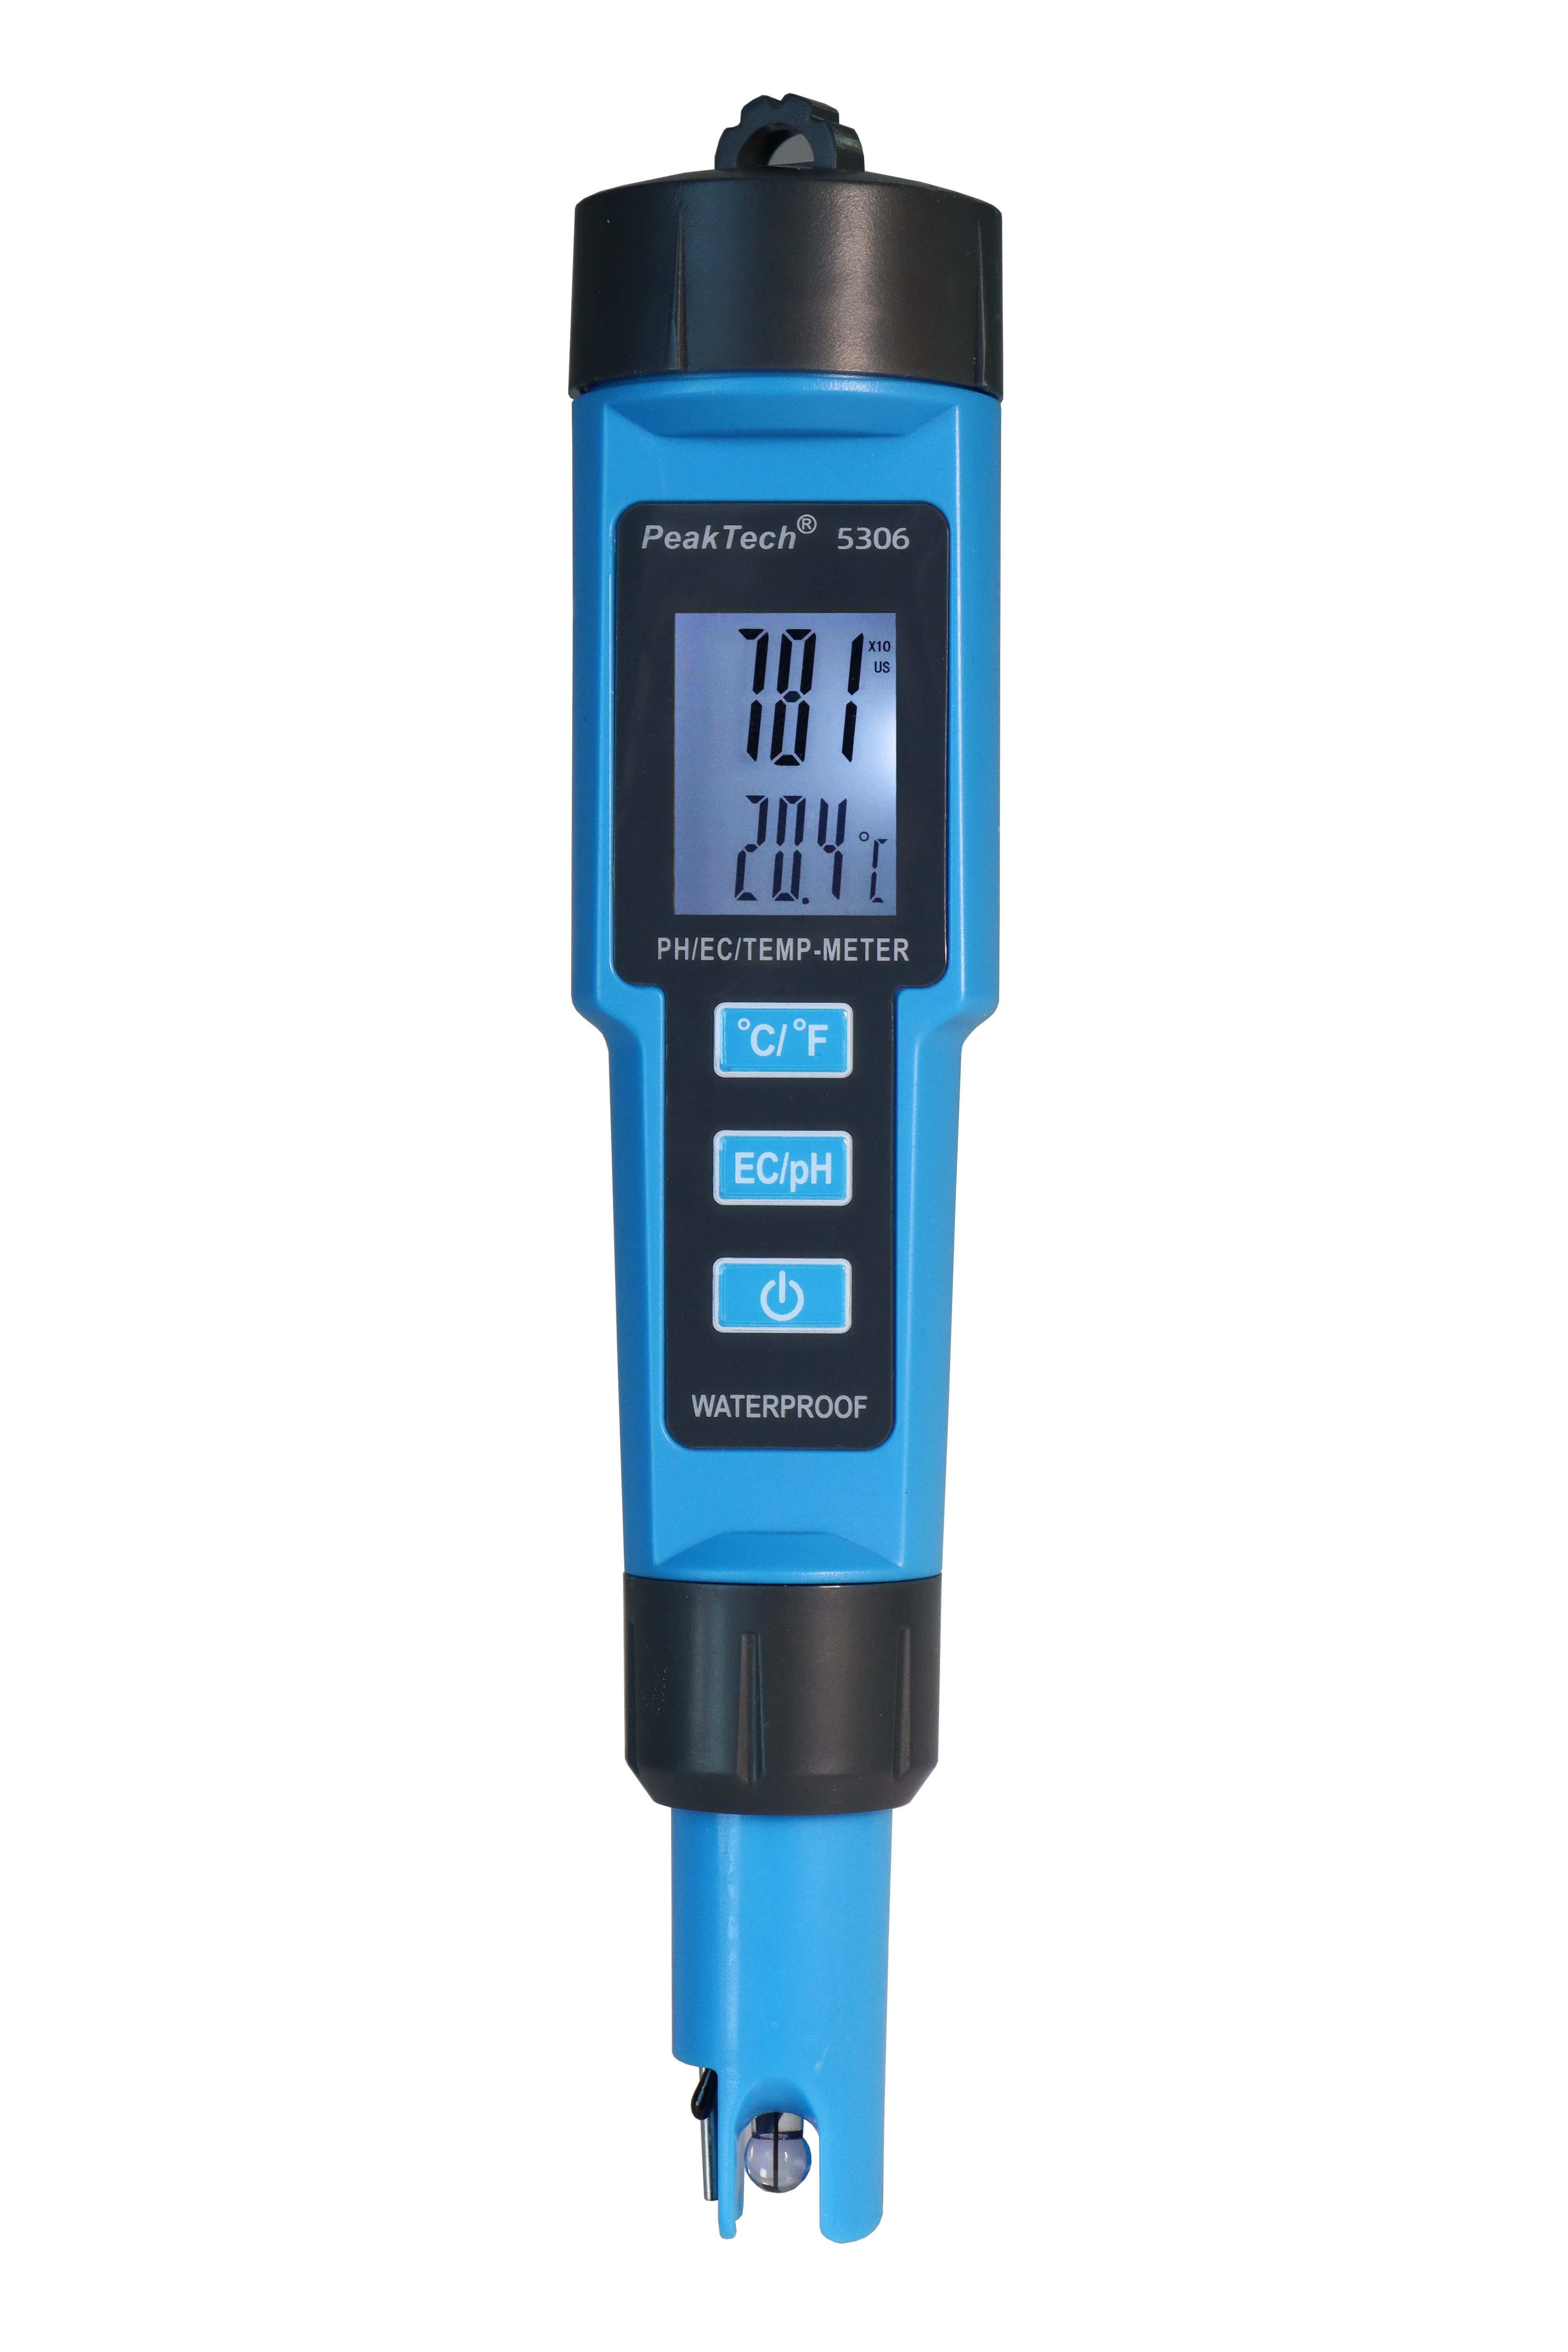 «PeakTech® P 5306» 3 in 1 PH-Meter for PH/EC/TEMP